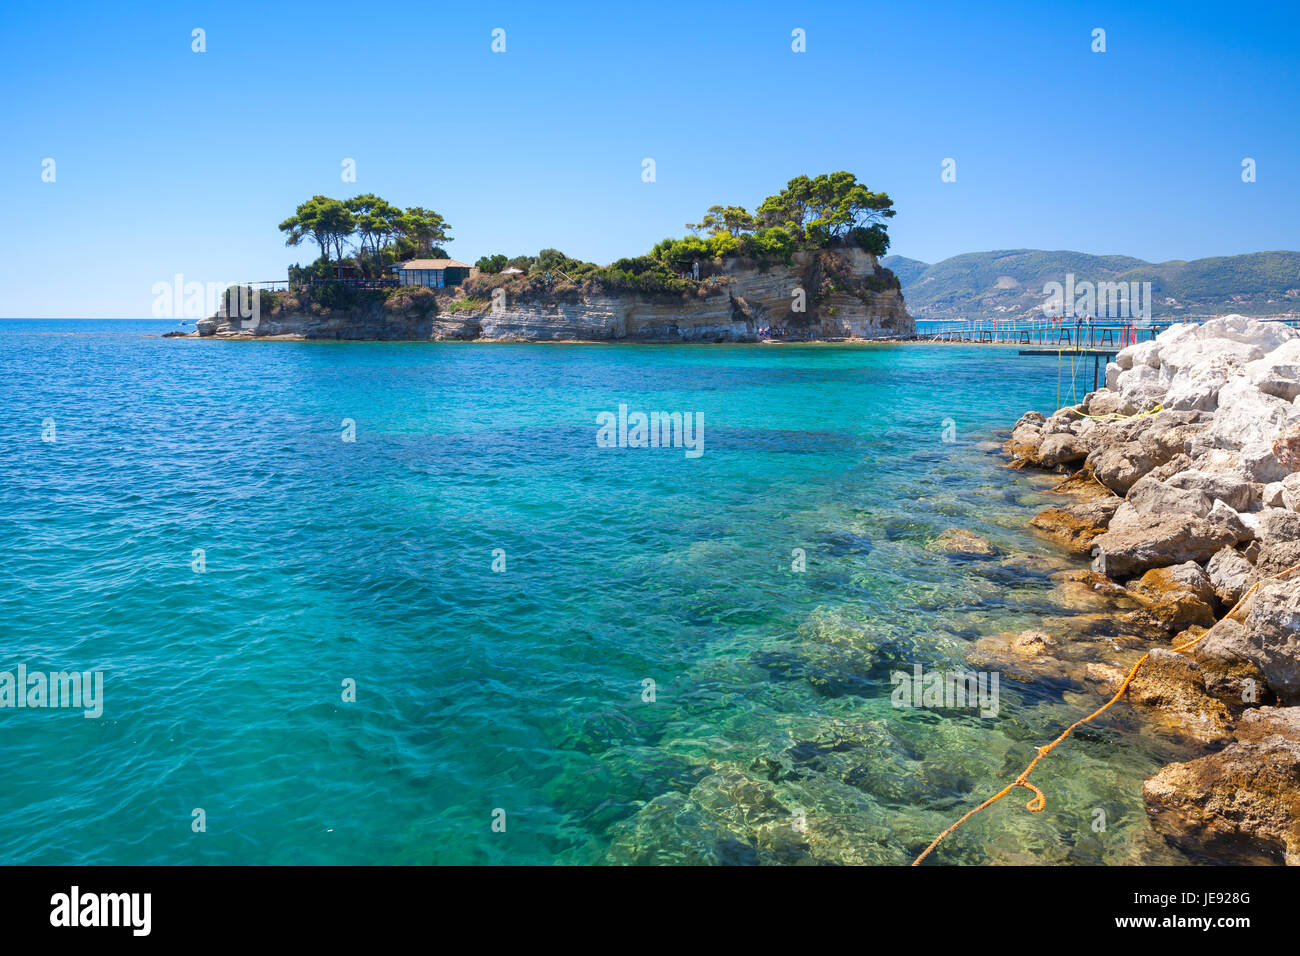 L'île de Cameo. L'île de Zakynthos, Grèce. Destination touristique populaire pour les vacances d'été Banque D'Images